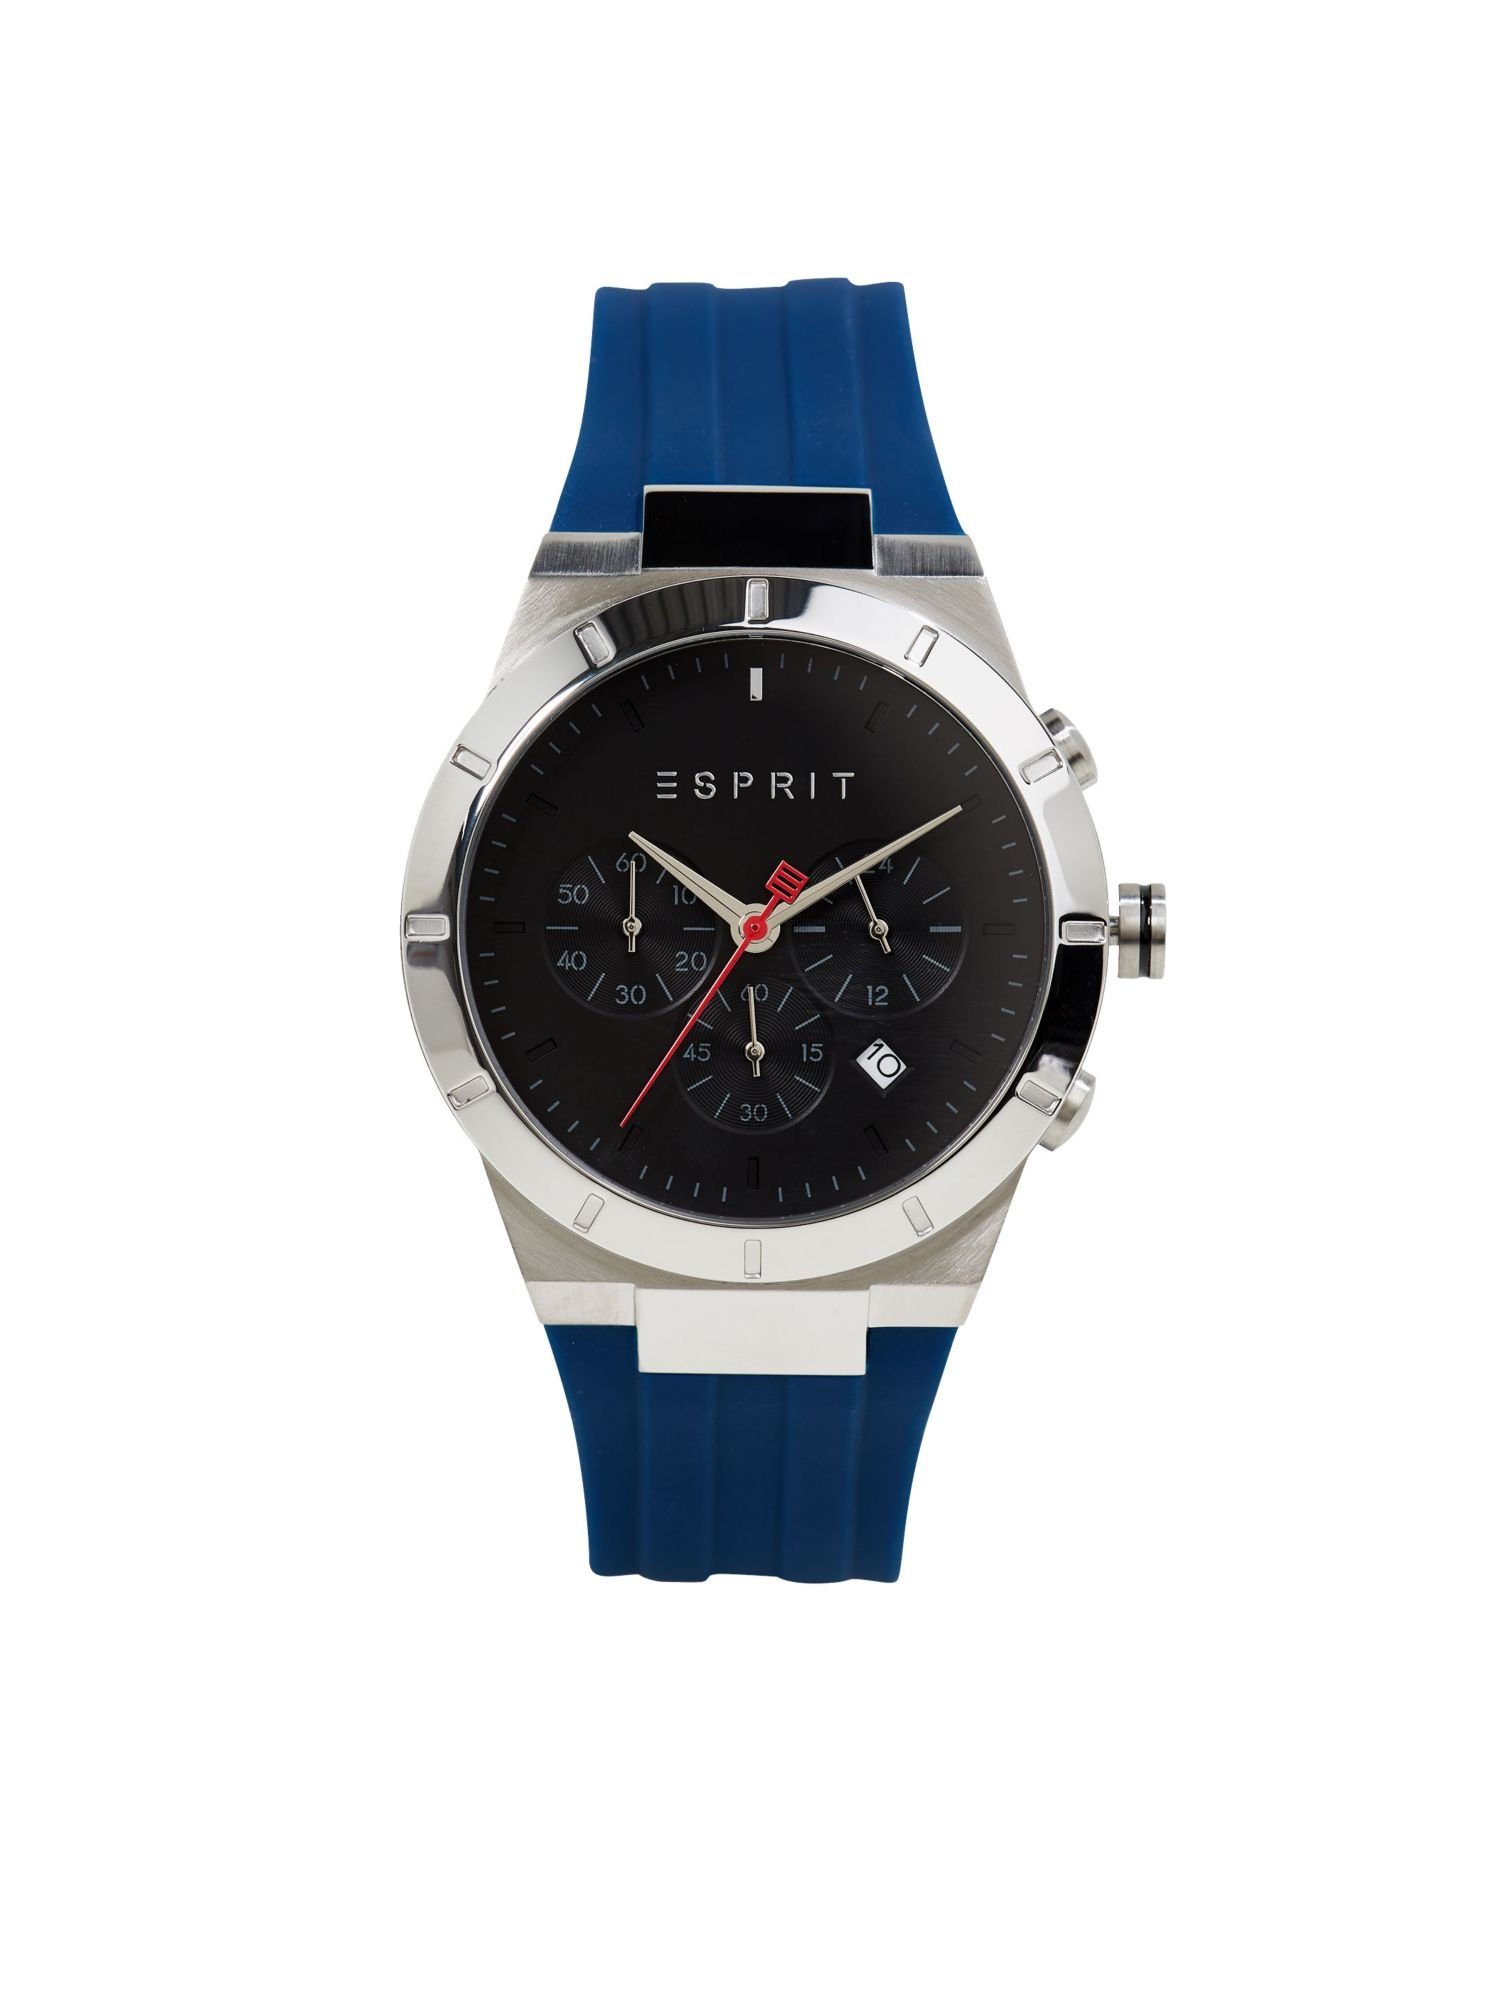 Esprit Chronograph »Chronograph mit Silikon-Armband« online kaufen | OTTO